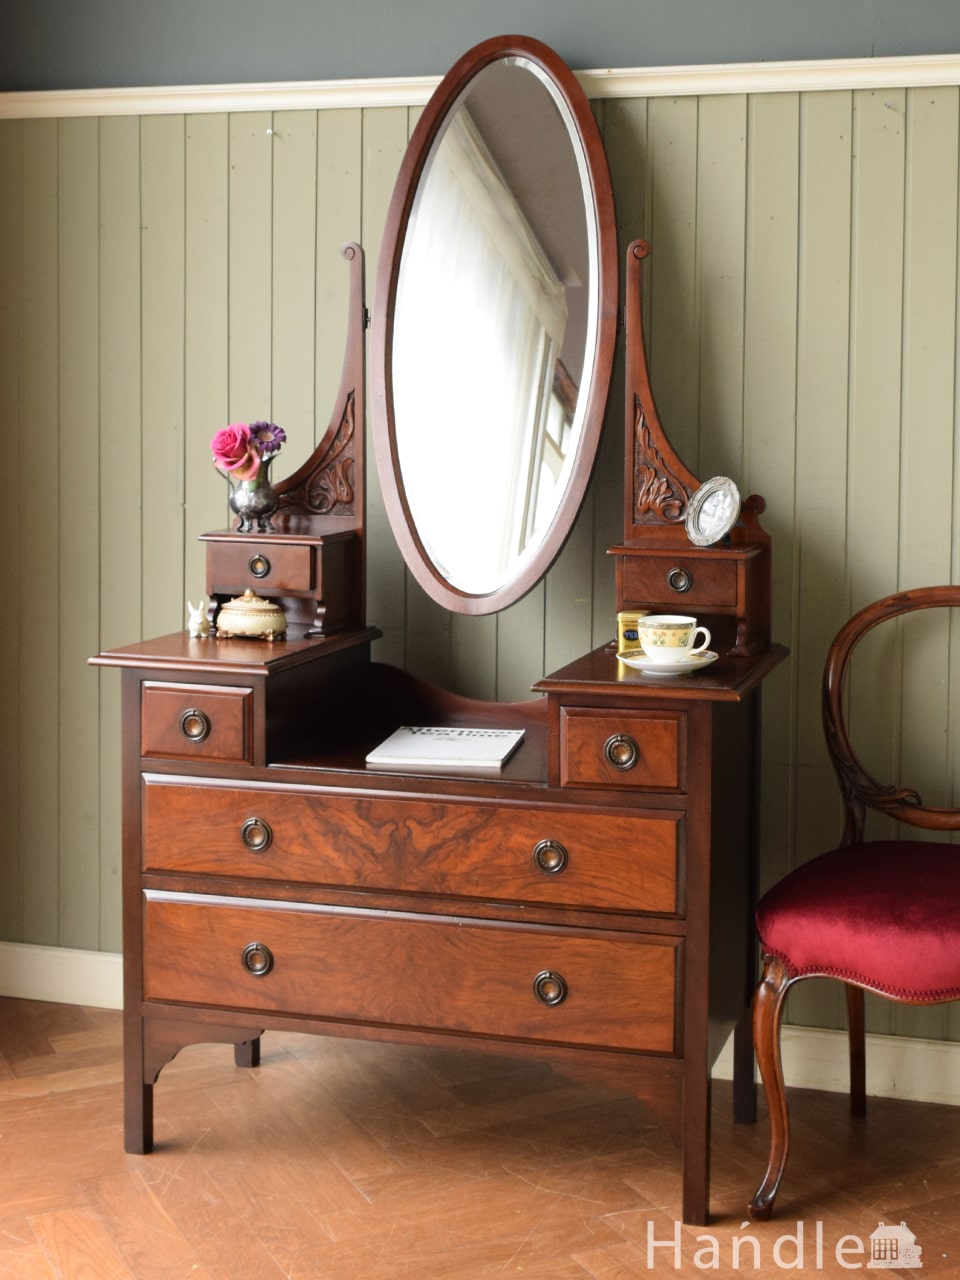 英国のアンティークドレッサー、オーバルの形の鏡、見鏡が美しいドレッシングチェスト (z-157-f)